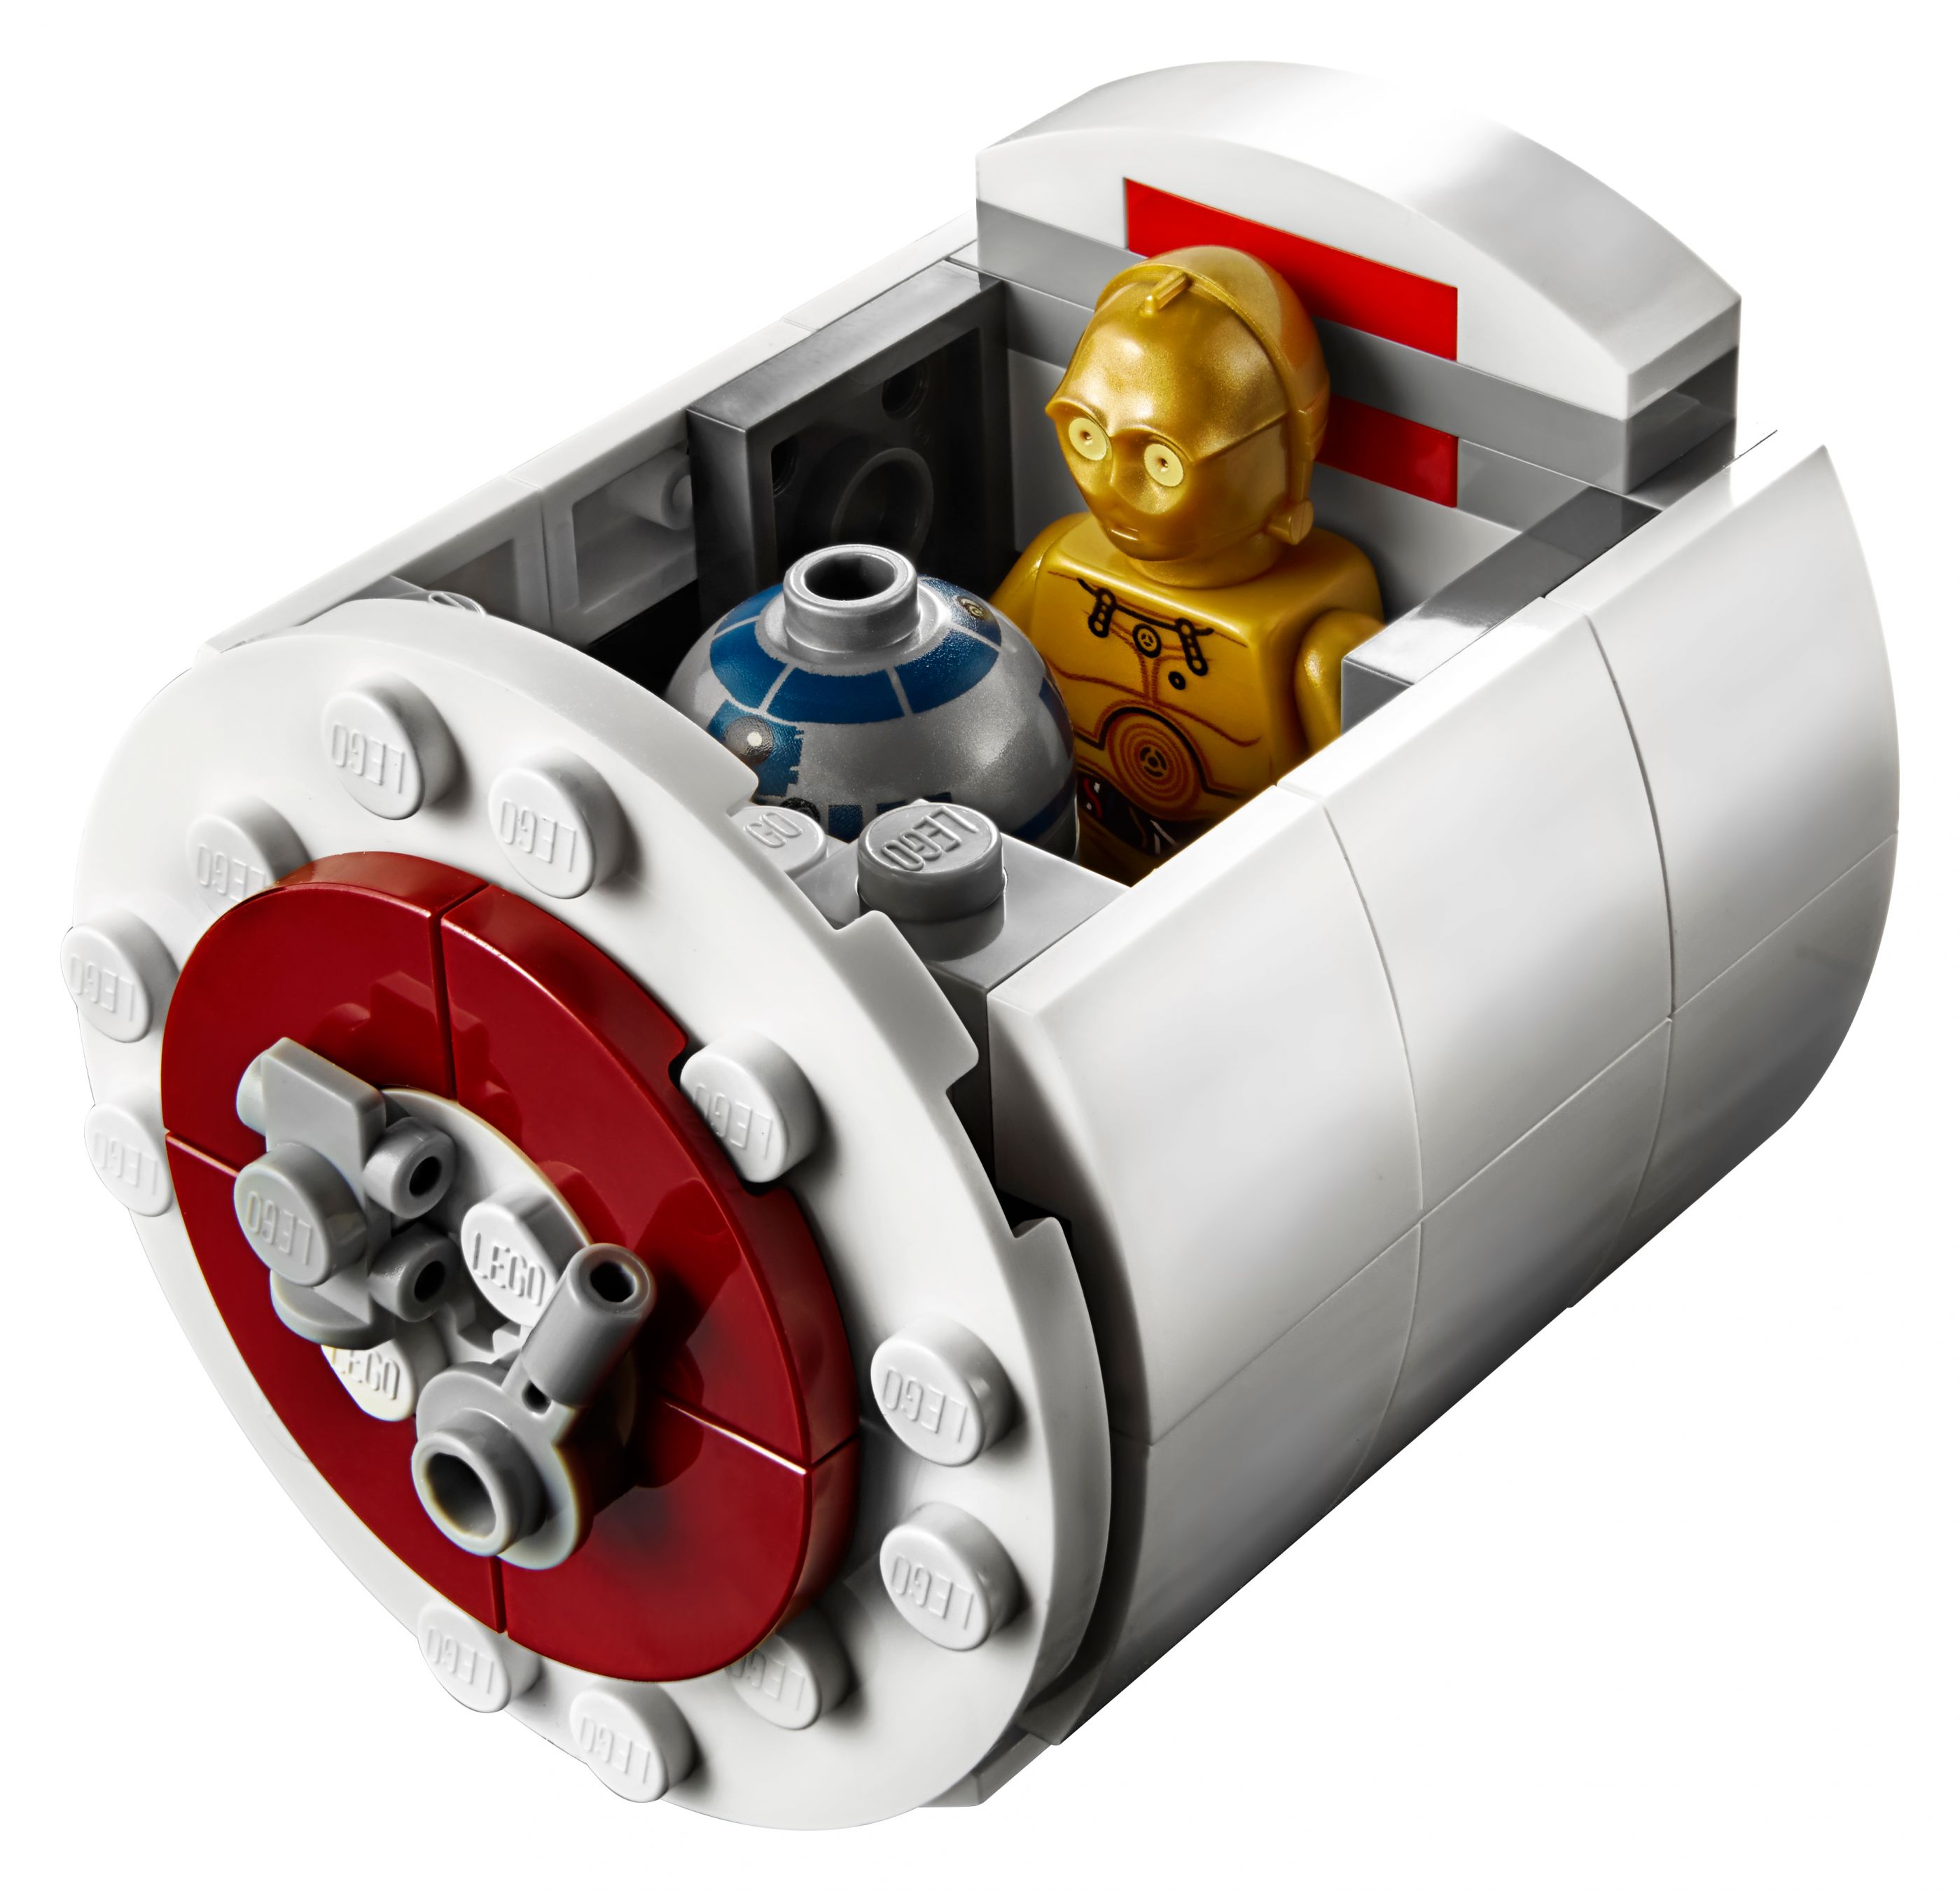 LEGO Star Wars 75244 Tantive IV LEGO_75244_alt10.jpg